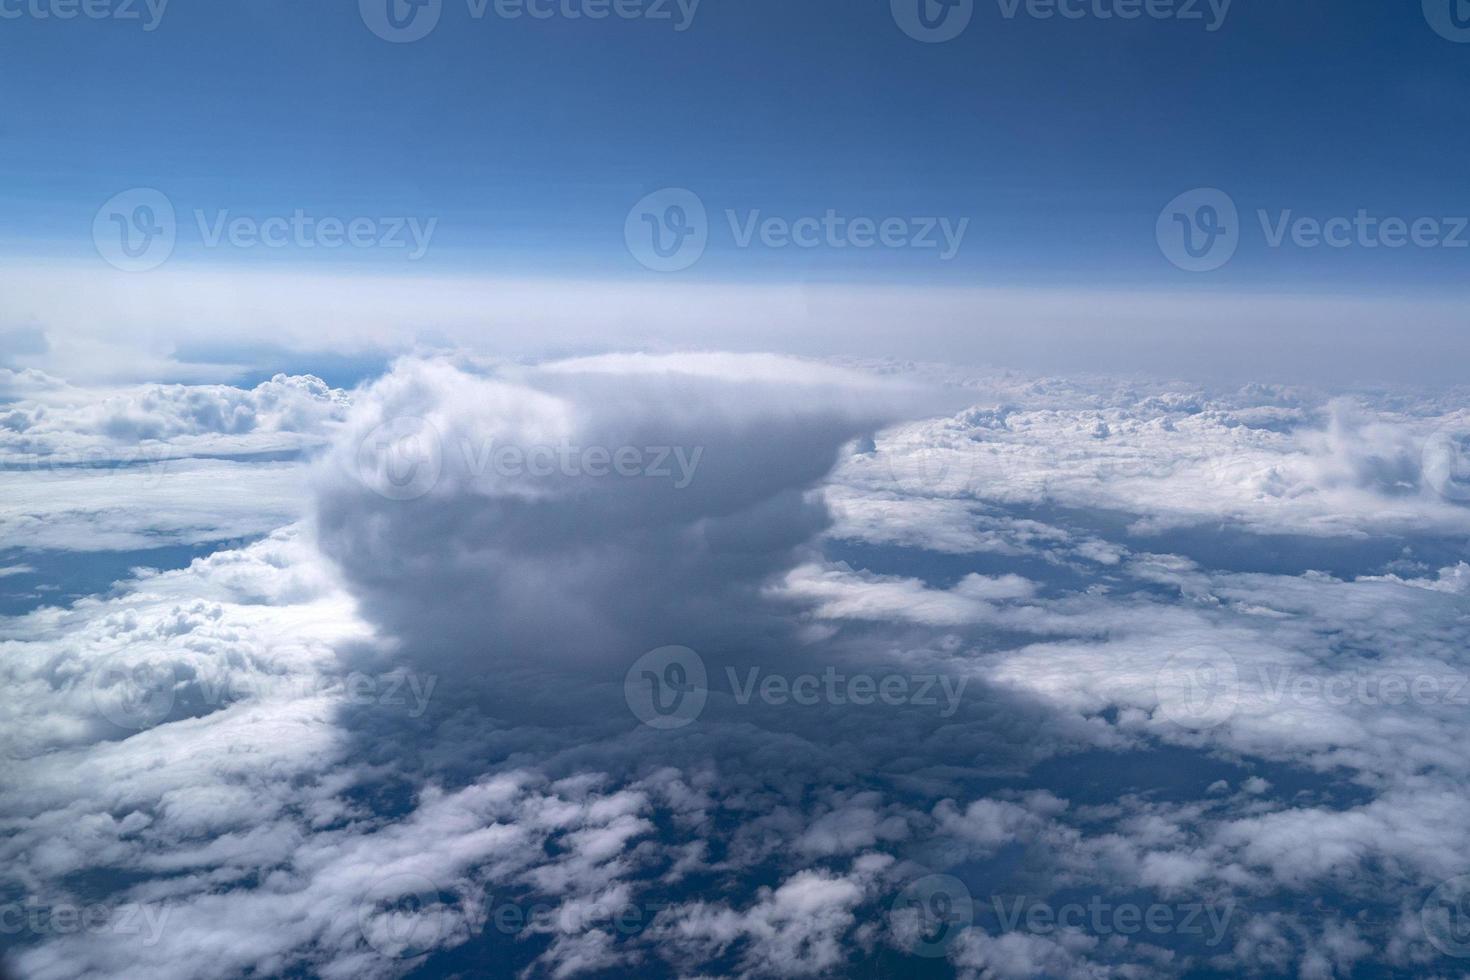 atomair nucleair oorlog bom explosie Leuk vinden wolk foto